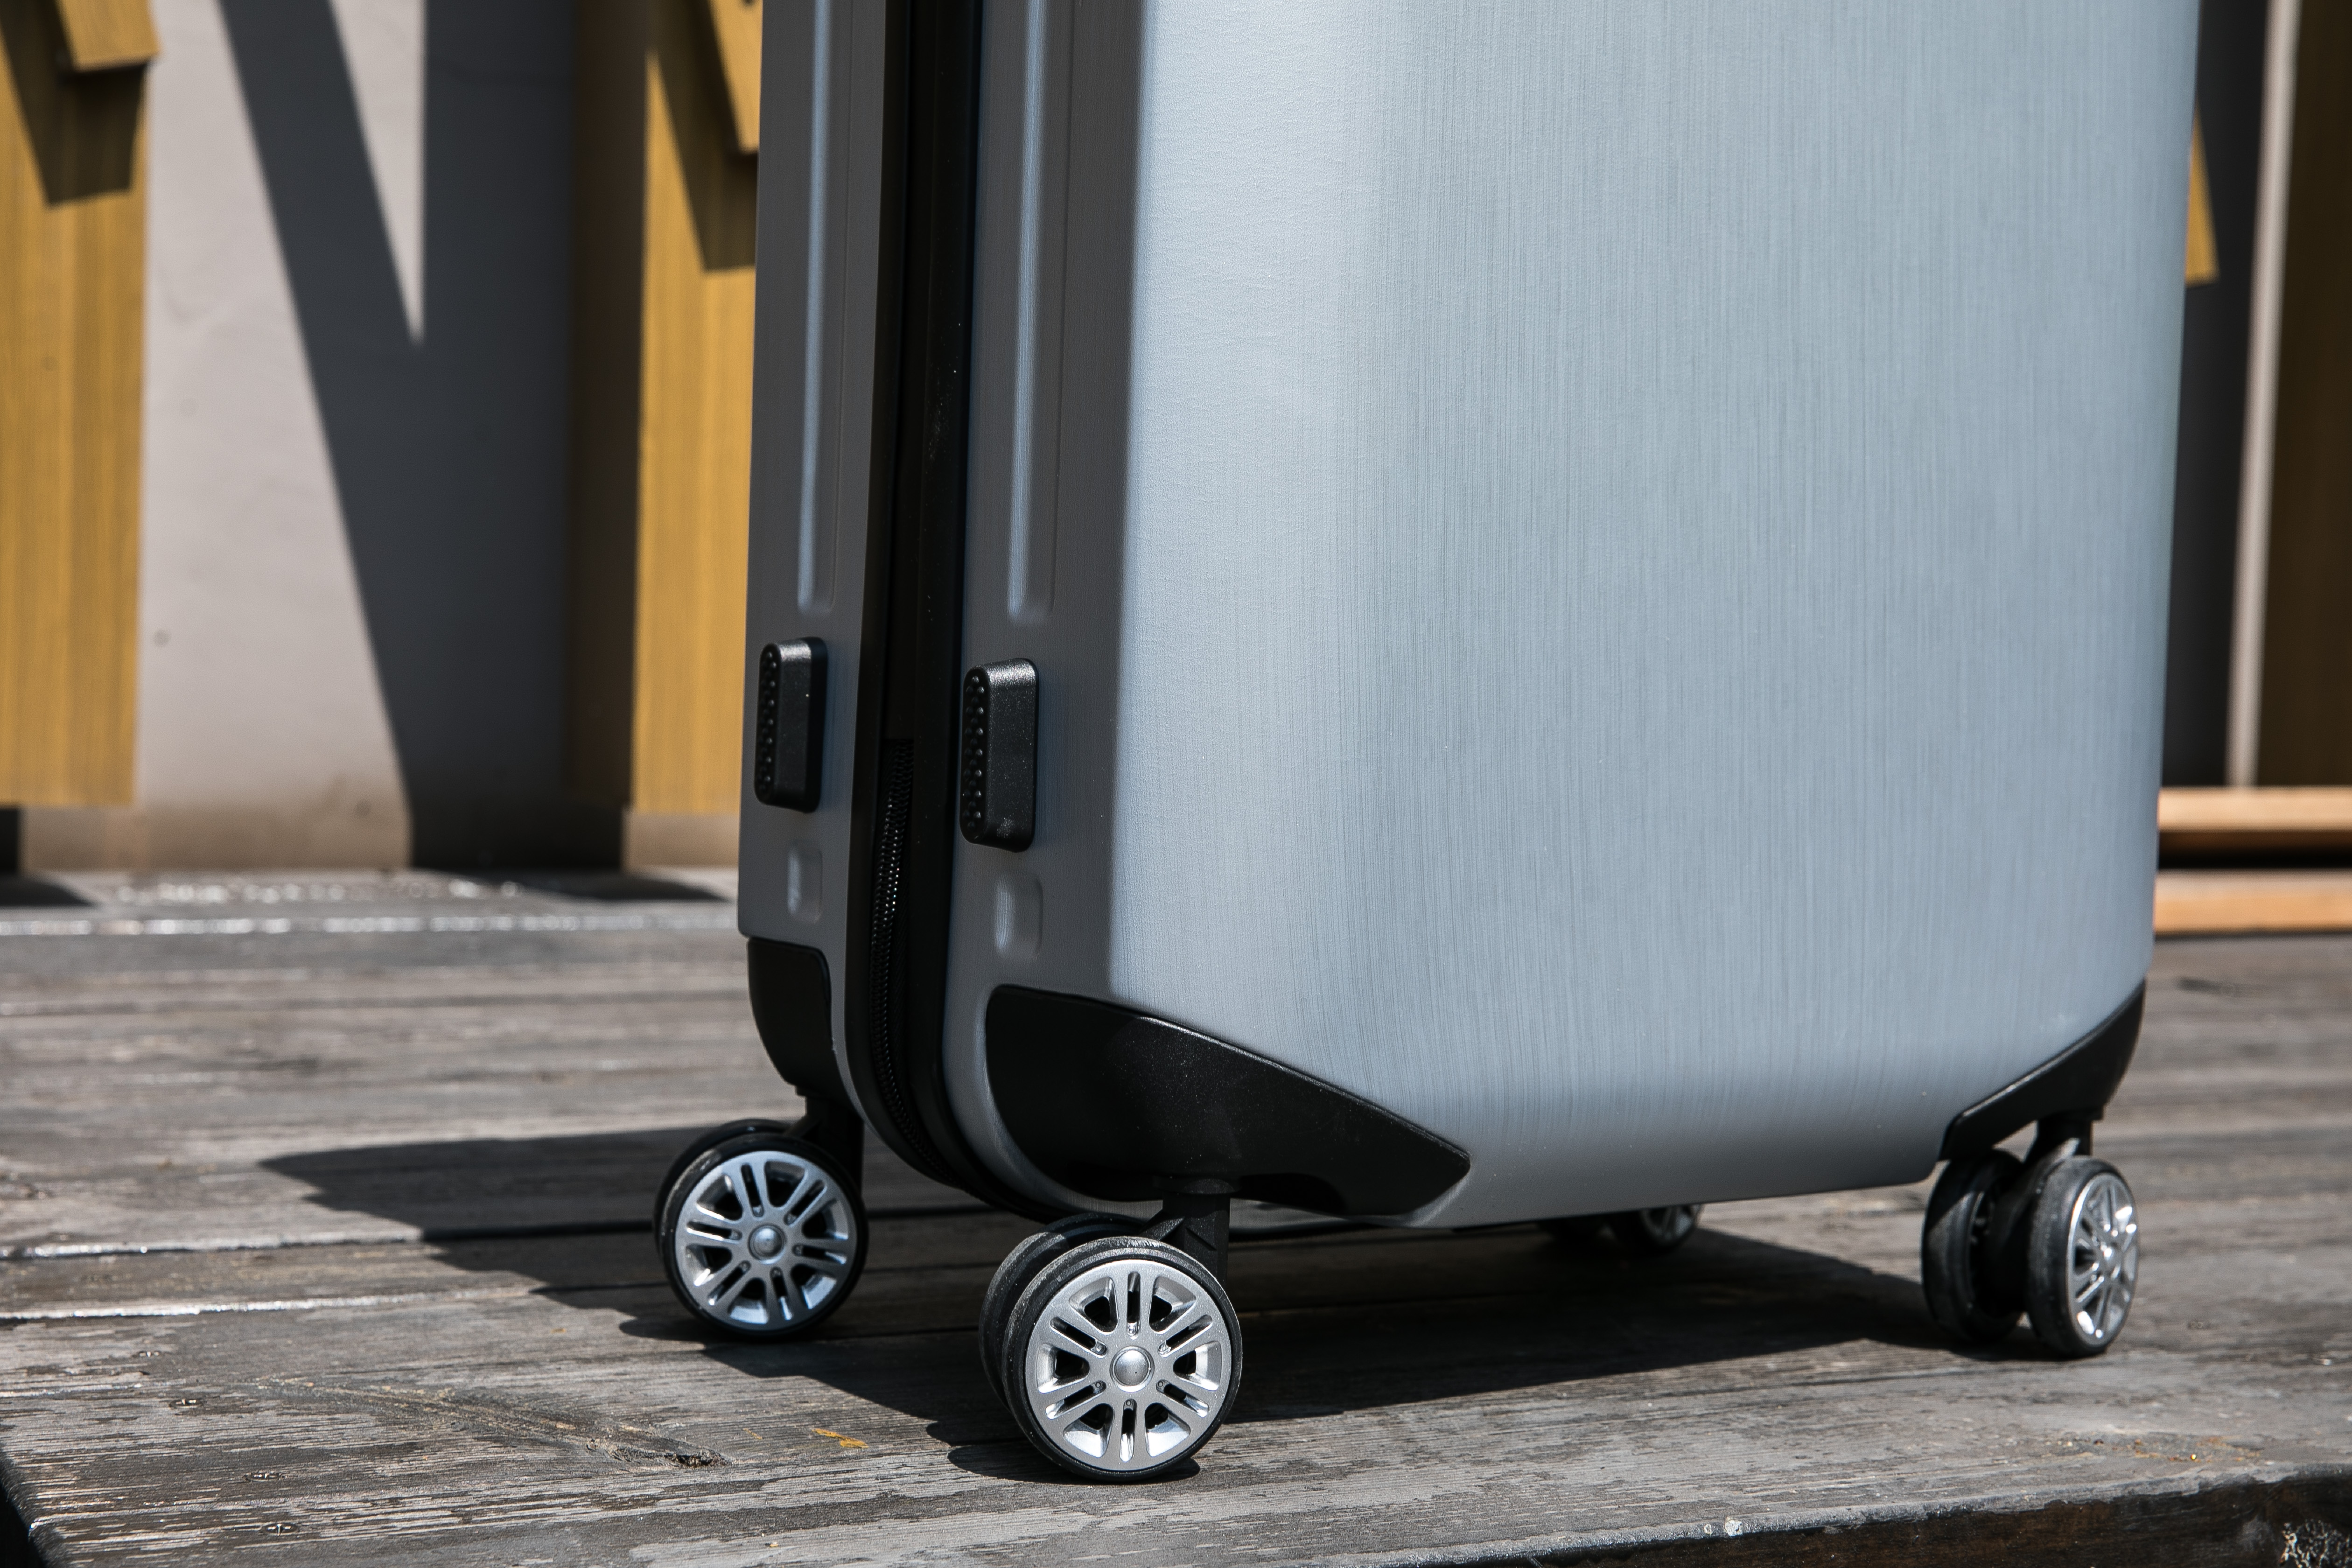 【箱旅世界】AIR BOX 超輕量單拉桿行李箱 20吋 25吋 登機箱 行李箱